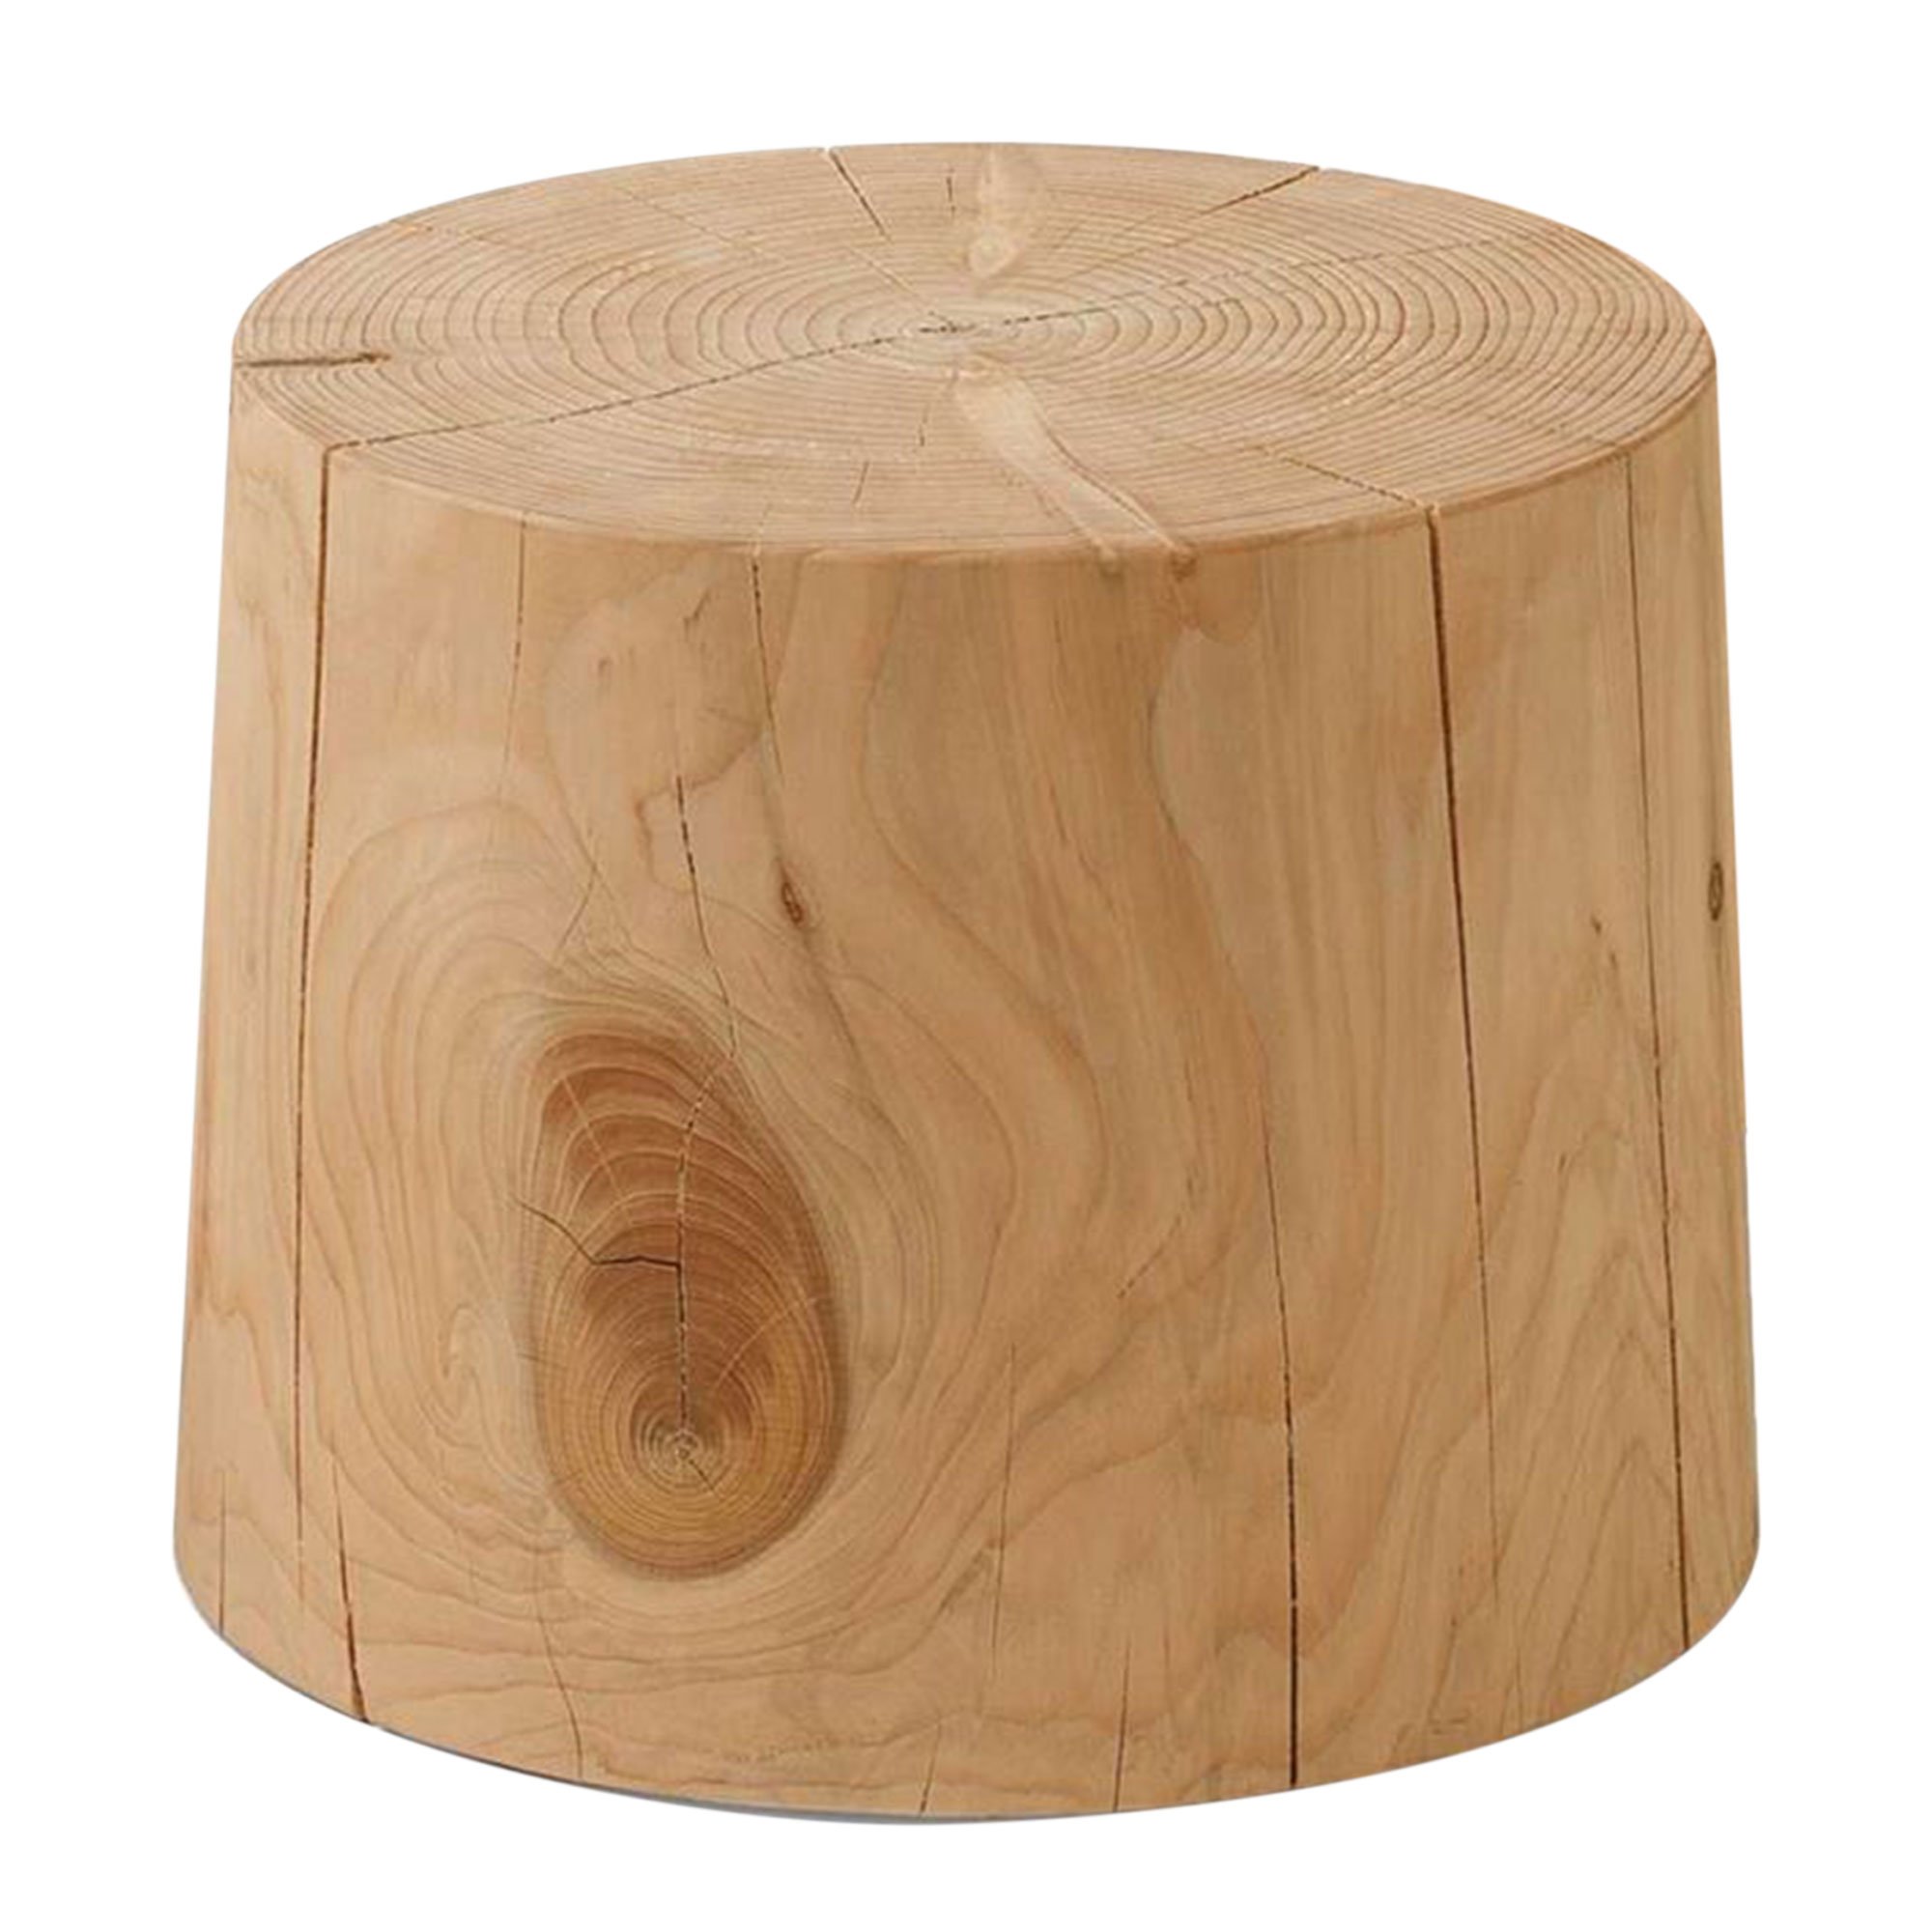 RIVA Legno Vivo Small Table 40x30cm, Round, Brown | Barker & Stonehouse